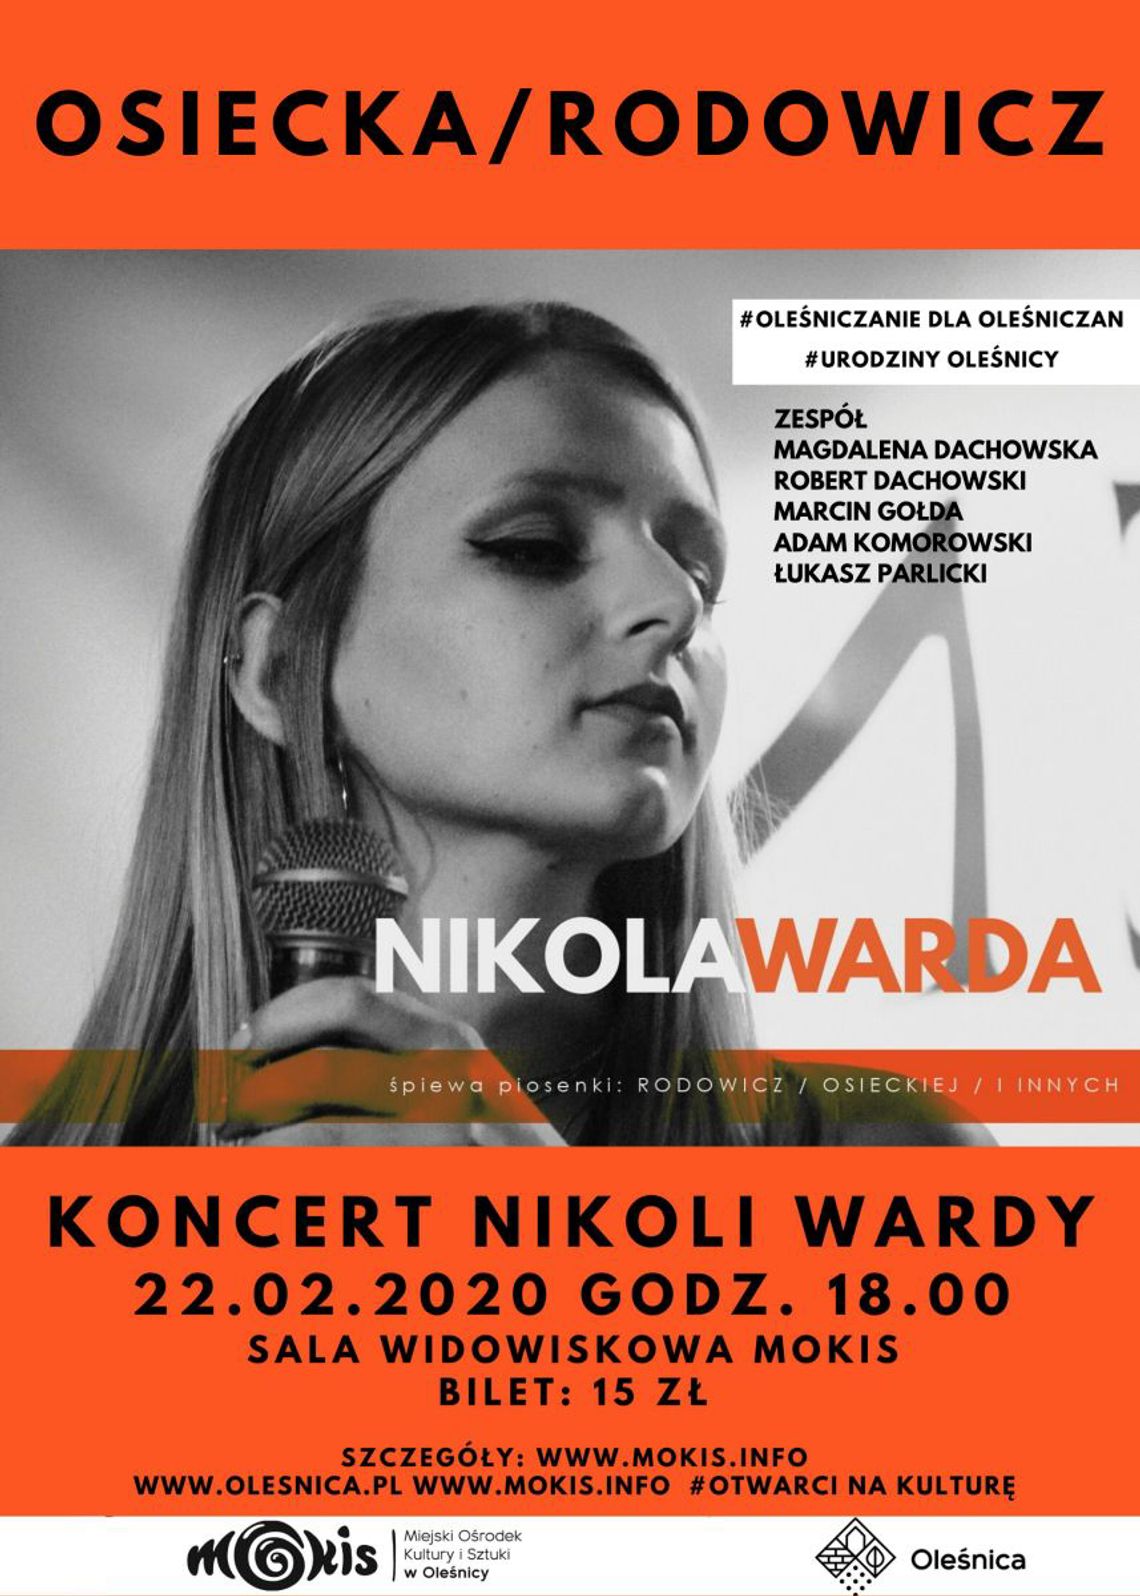 Urodziny Oleśnicy – koncert Nikoli Wardy z hitami Osieckiej i Rodowicz